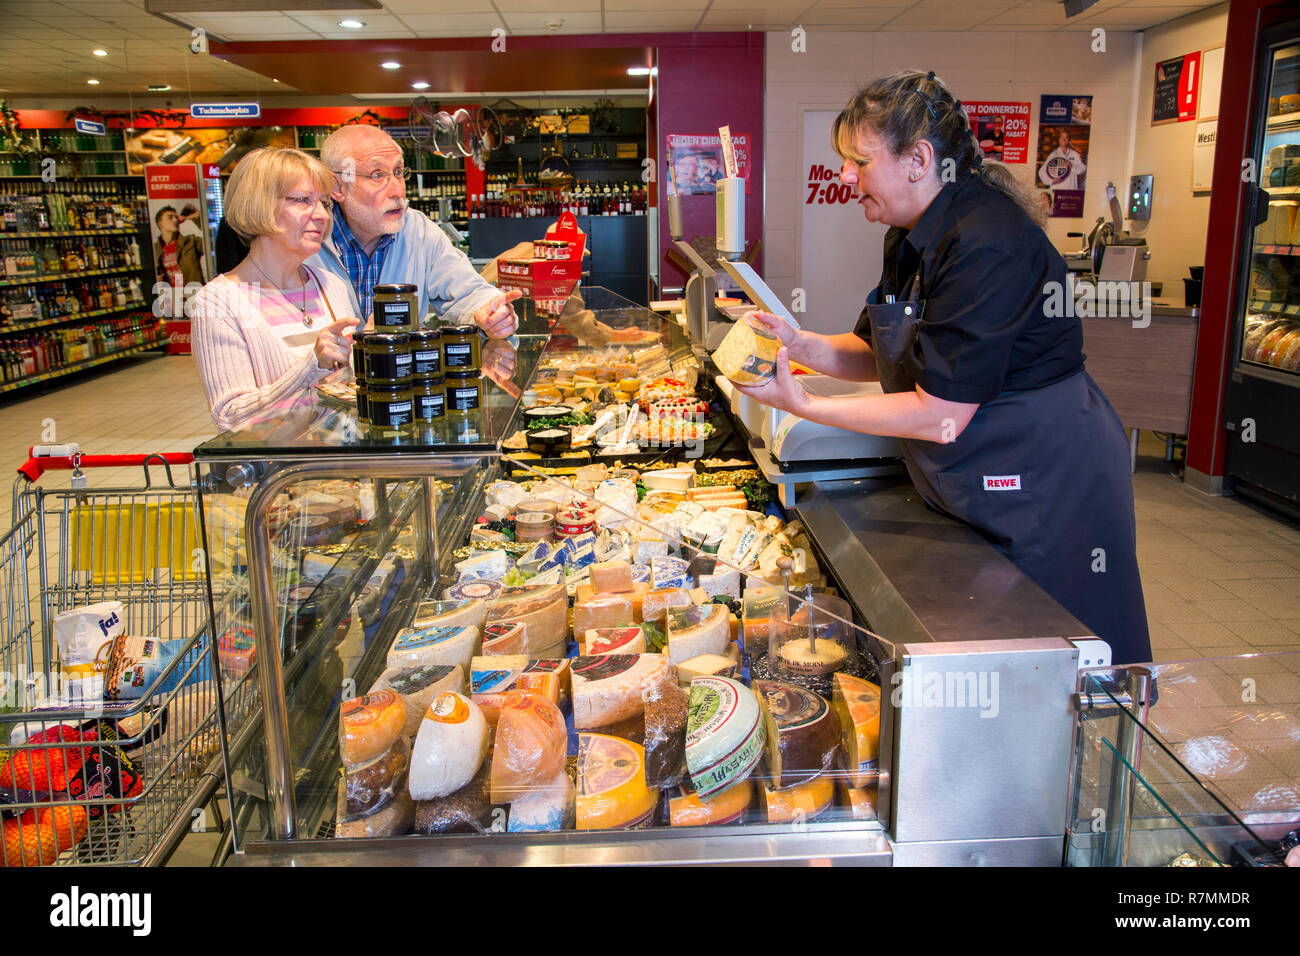 Shop assistant servant un couple au fromages, shopping dans un supermarché, Allemagne Banque D'Images